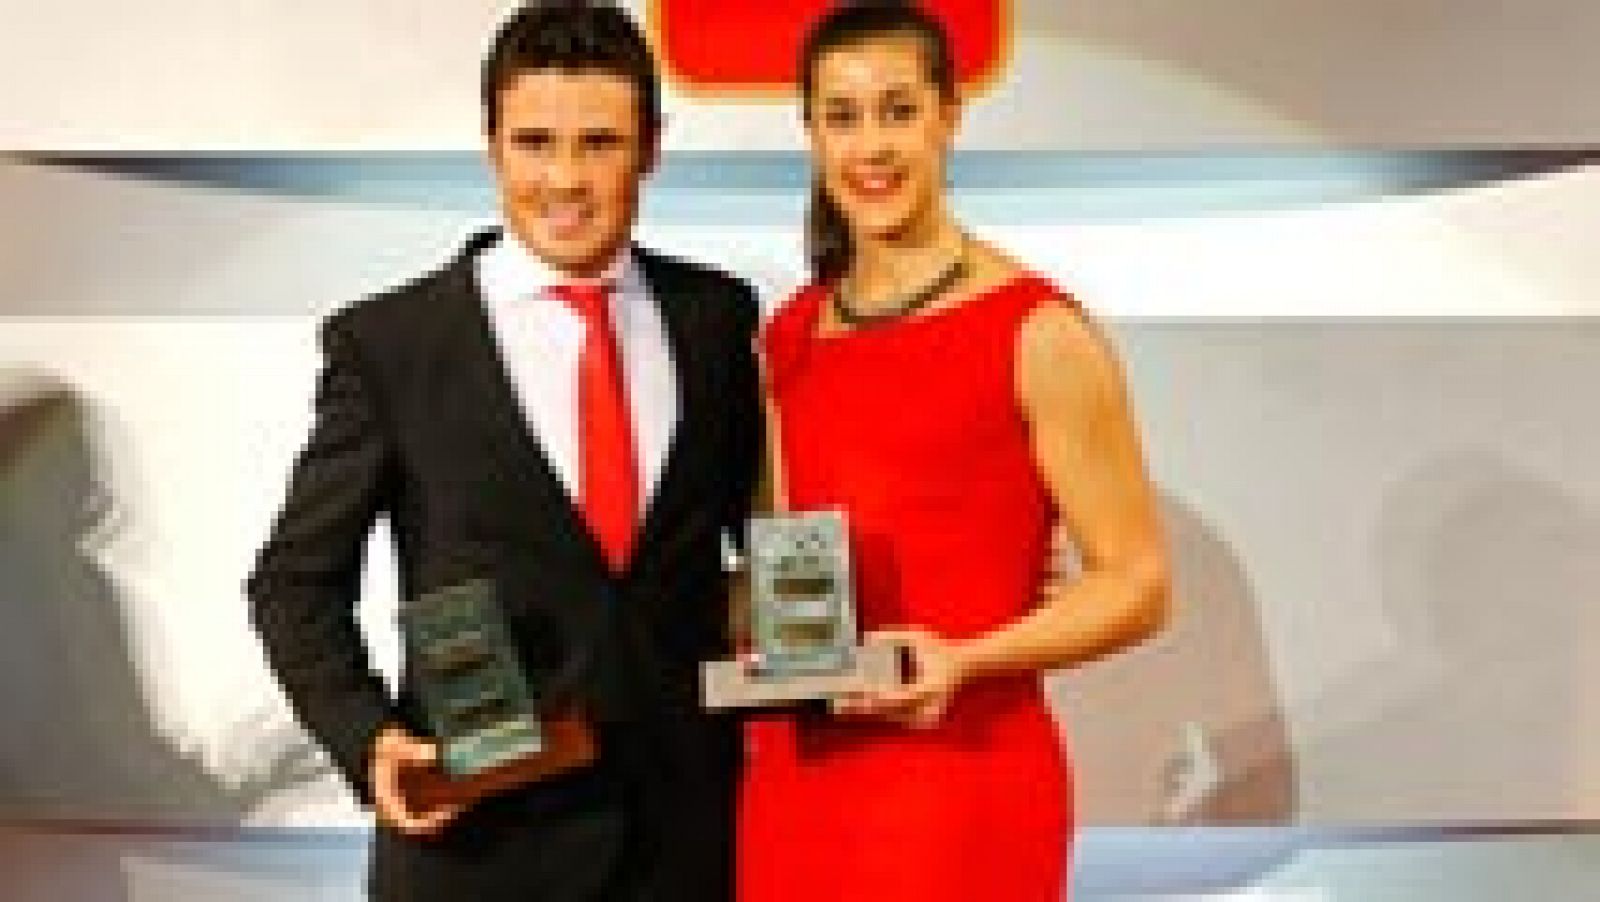 Son los deportistas del año para el Comité Olímpico Español. Carolina Marín, campeona del mundo de bádminton, y Javier Gómez Noya, campeón del mundo de triatlón, han sido homenajeados en la gala del COE.